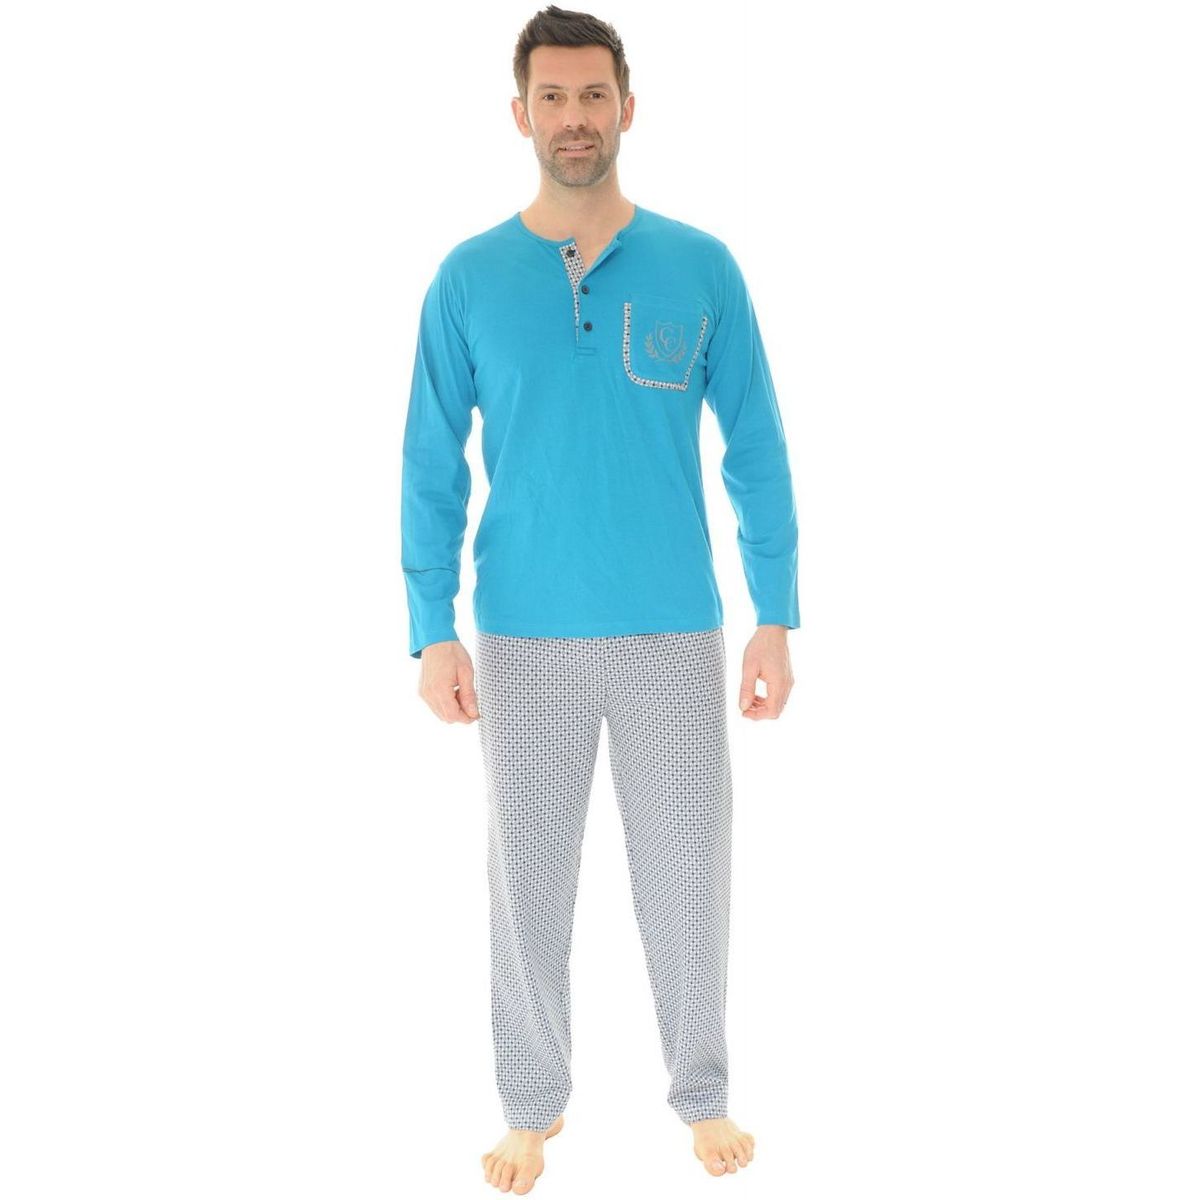 Îmbracaminte Bărbați Pijamale și Cămăsi de noapte Christian Cane SHAWN albastru